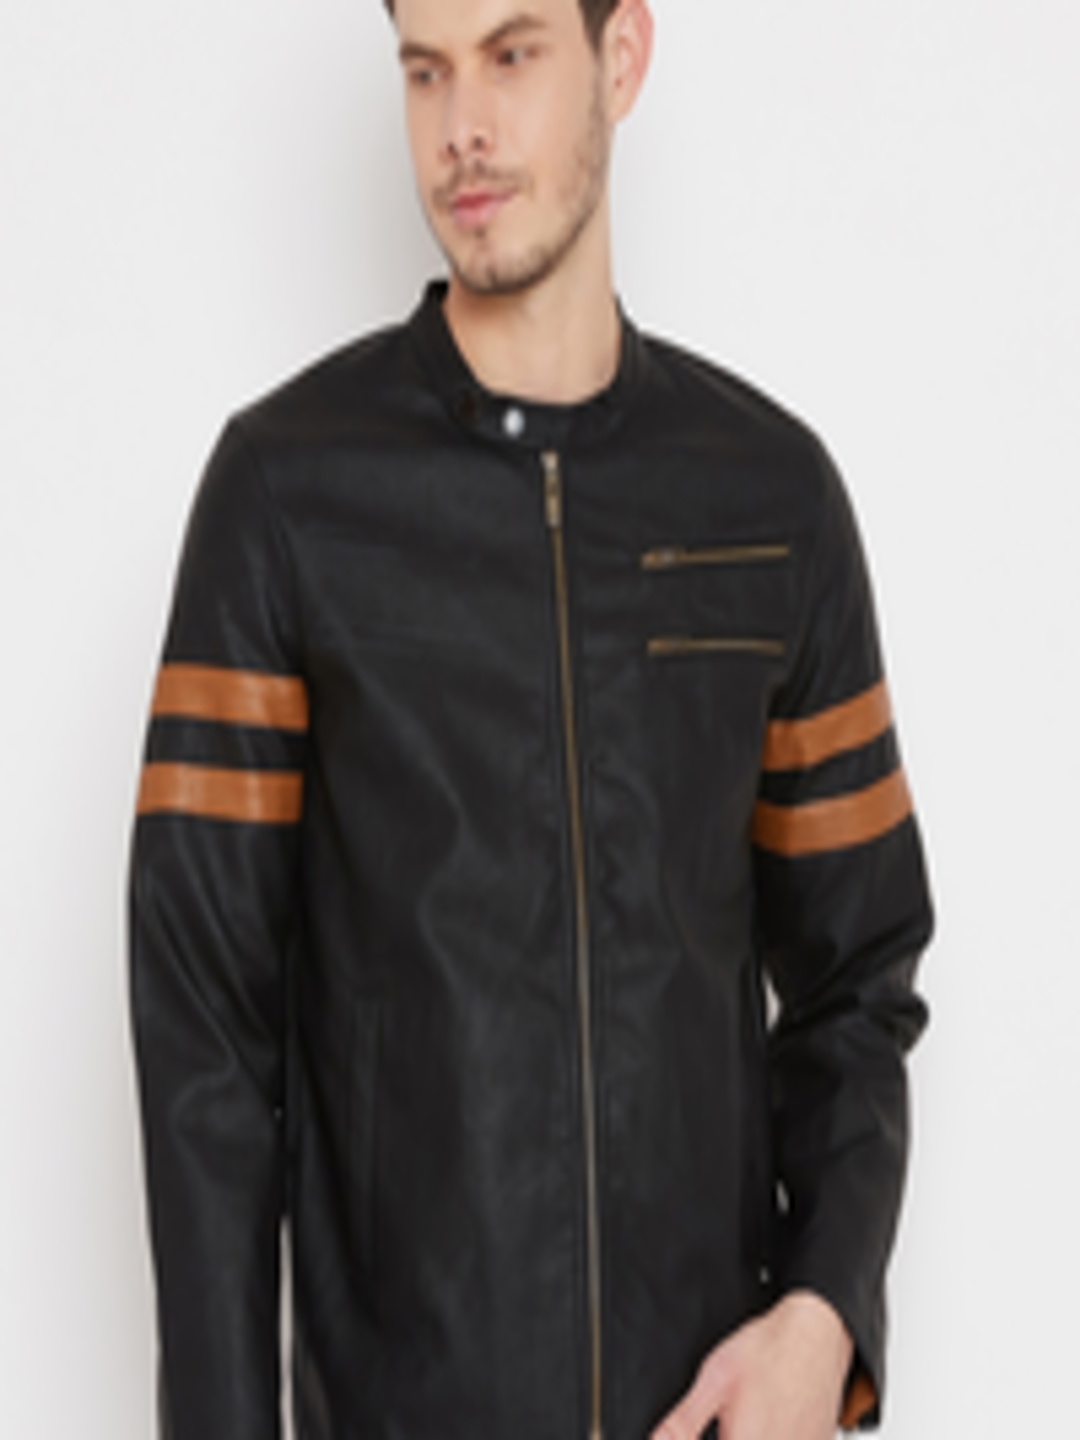 Buy Duke Men Black Striped Biker Jacket - Jackets for Men 7742024 | Myntra